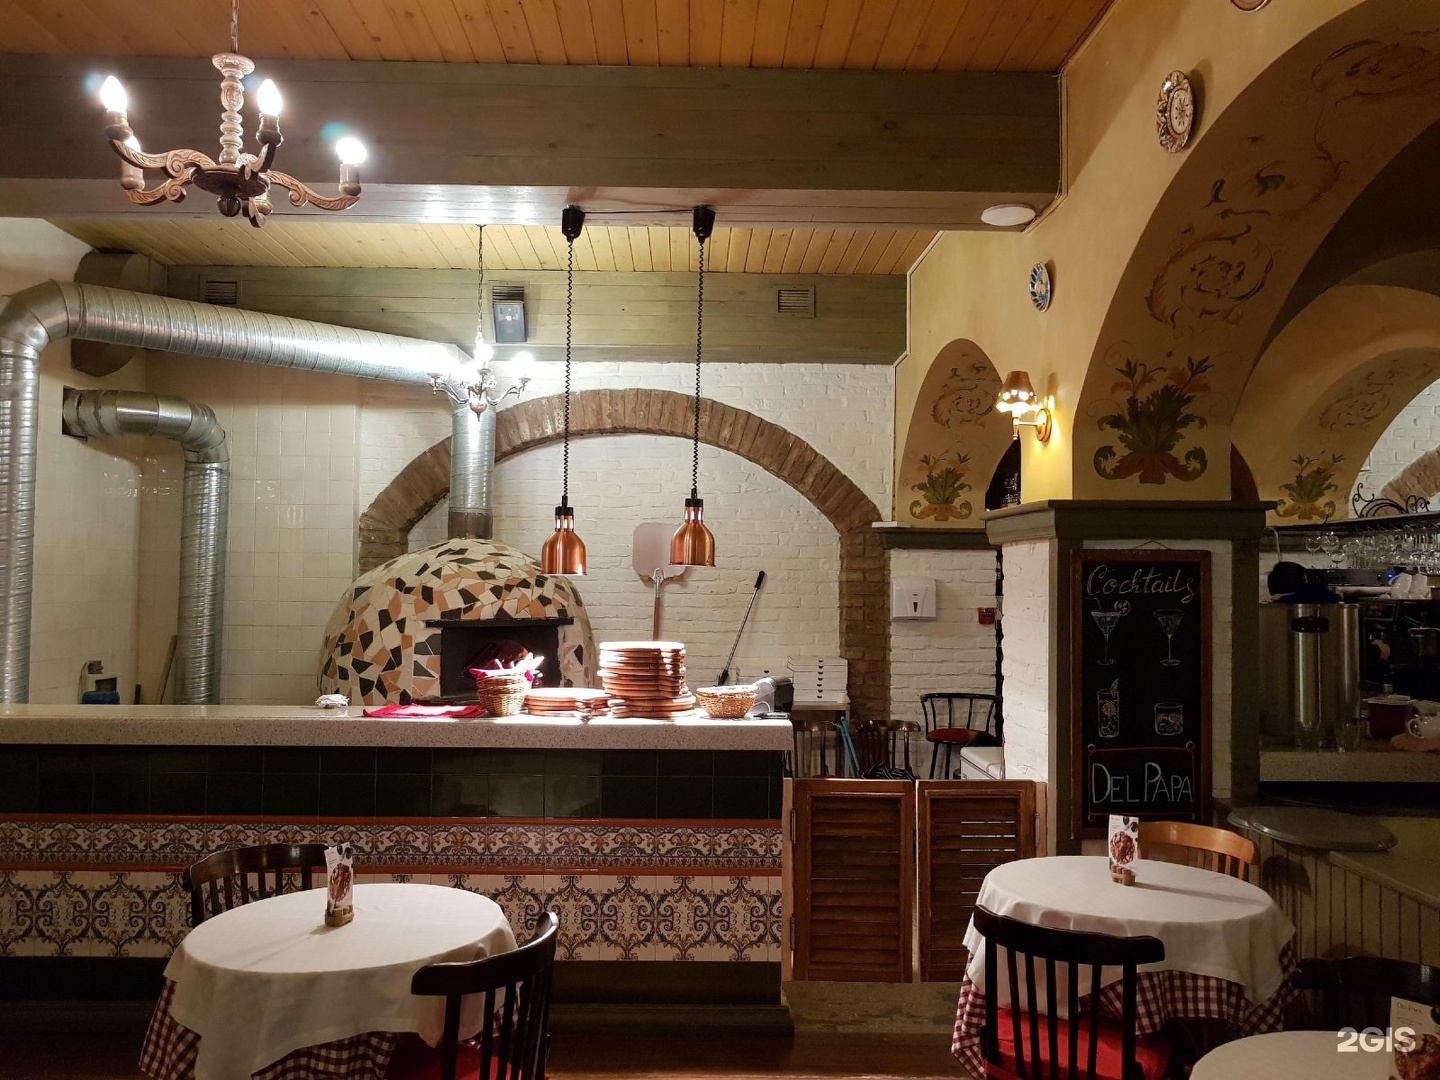 Ресторан бульвар Торез. Ресторан итальянской кухни Бухара. Кафе итальянской кухни в Алматы. Ресторан "бульвар" Комрат. Ресторан домашней кухни